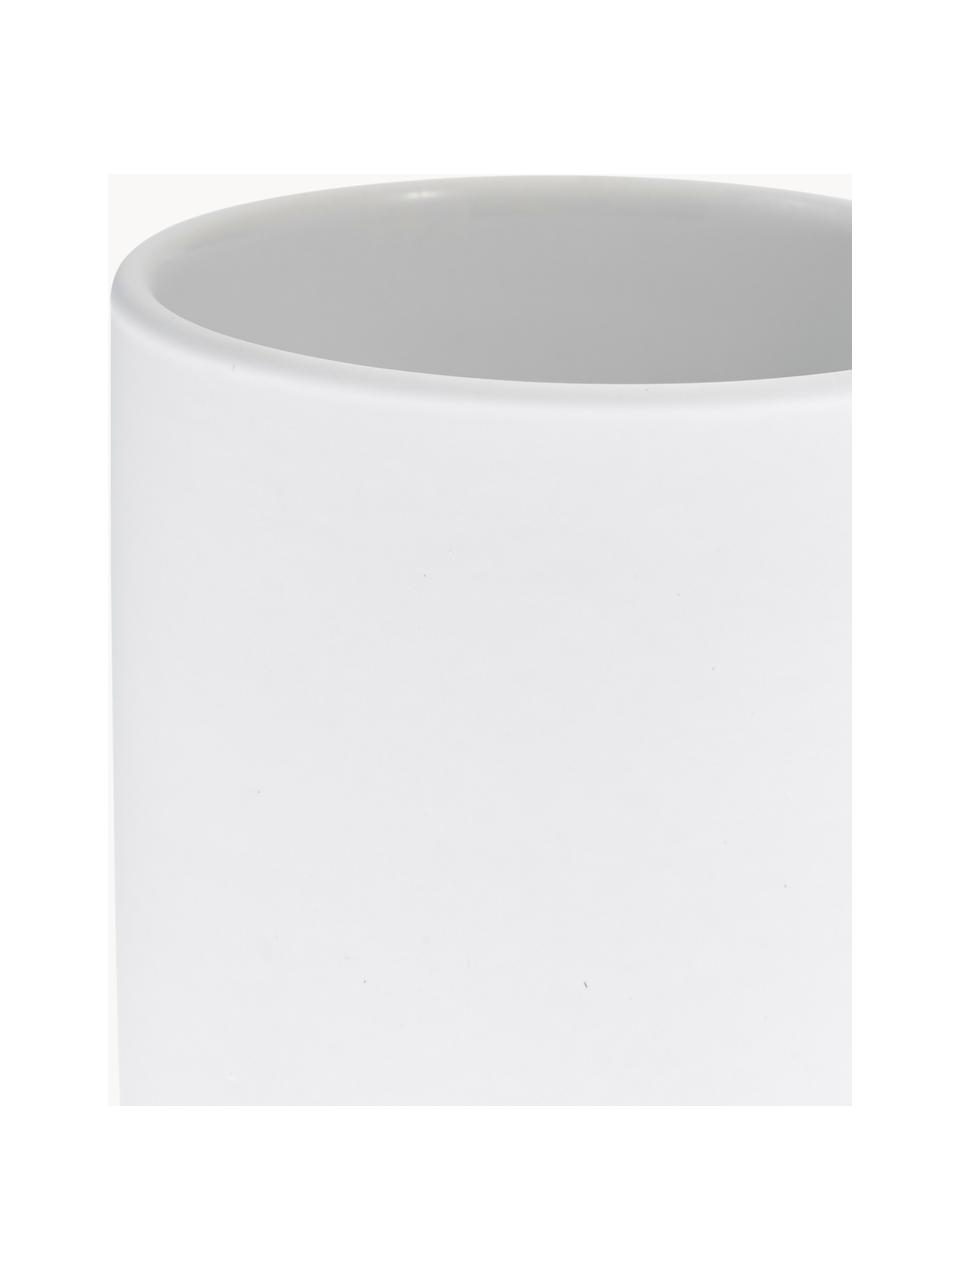 Zahnputzbecher Ume aus Steingut, Steingut überzogen mit Soft-touch-Oberfläche (Kunststoff), Weiß, Ø 8 x H 10 cm